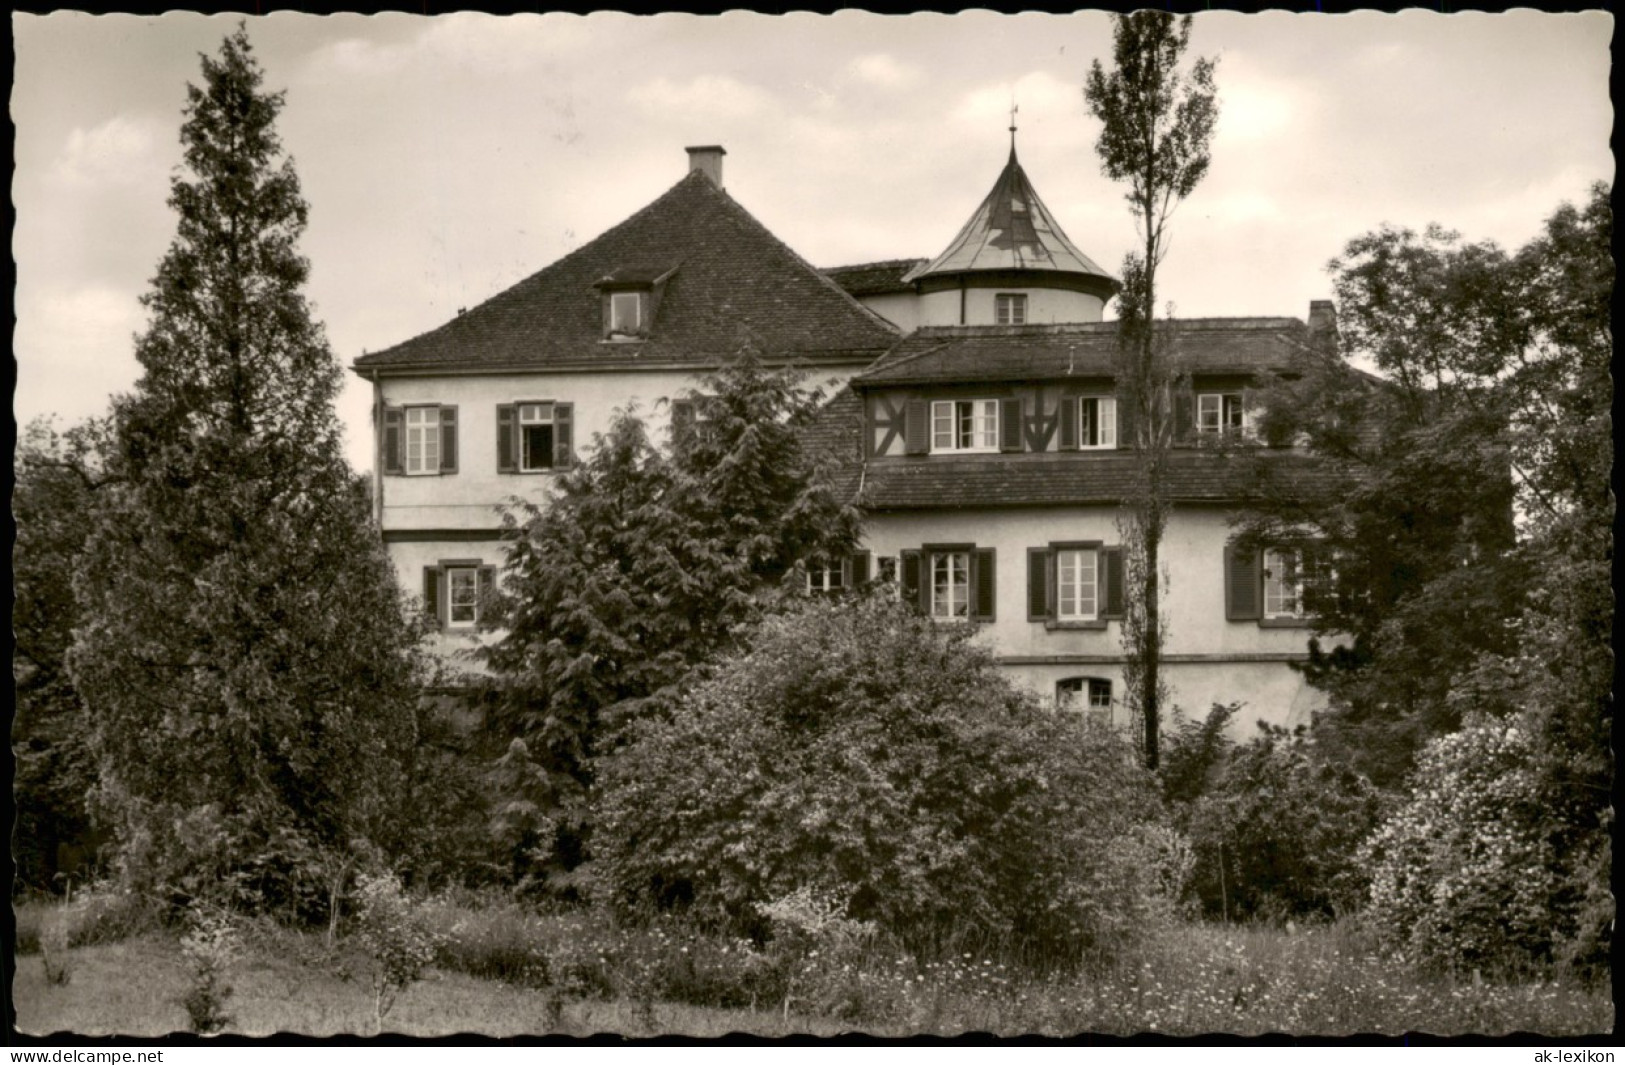 Ansichtskarte Lindach-Schwäbisch Gmünd Kurhaus Im Schloss 1967 - Schwäbisch Gmünd